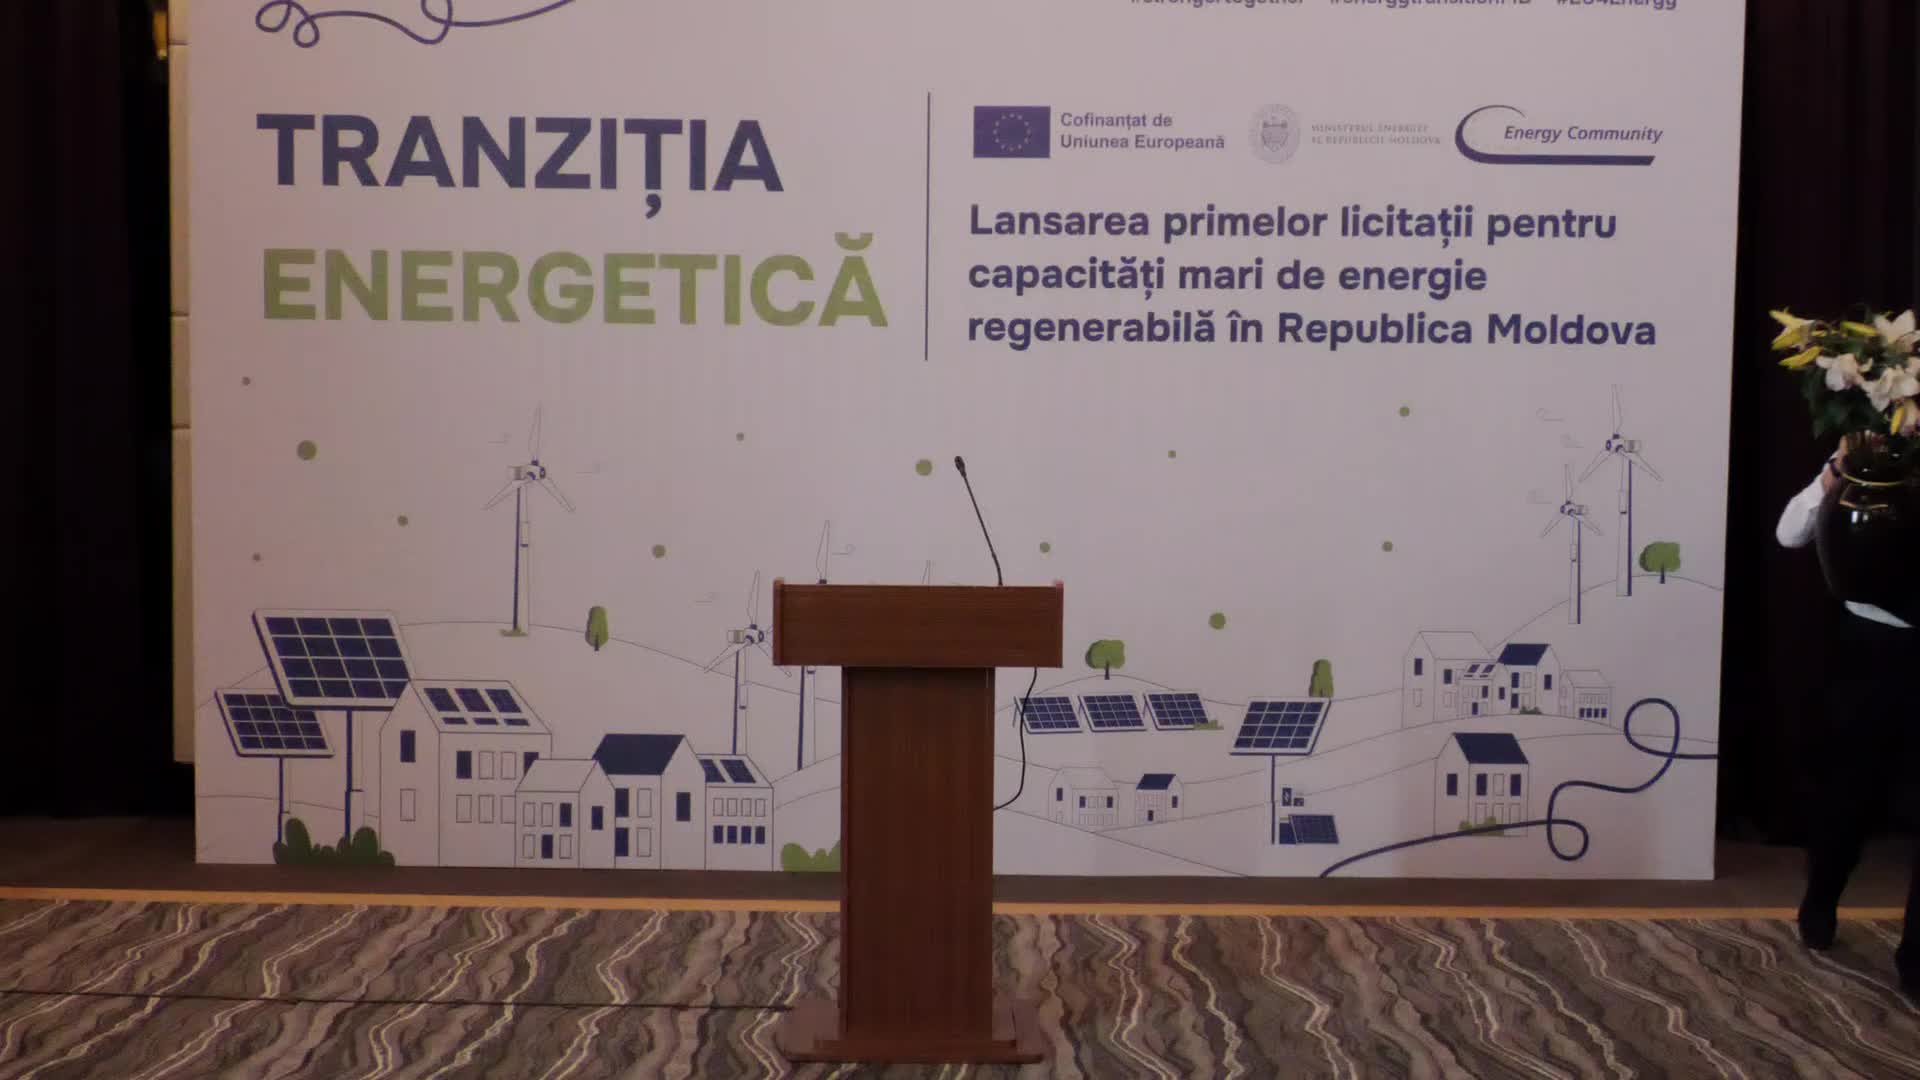 Briefing de presă privind lansarea primelor licitații pentru oferirea statutului de producător eligibil mare de energie eoliană și solară